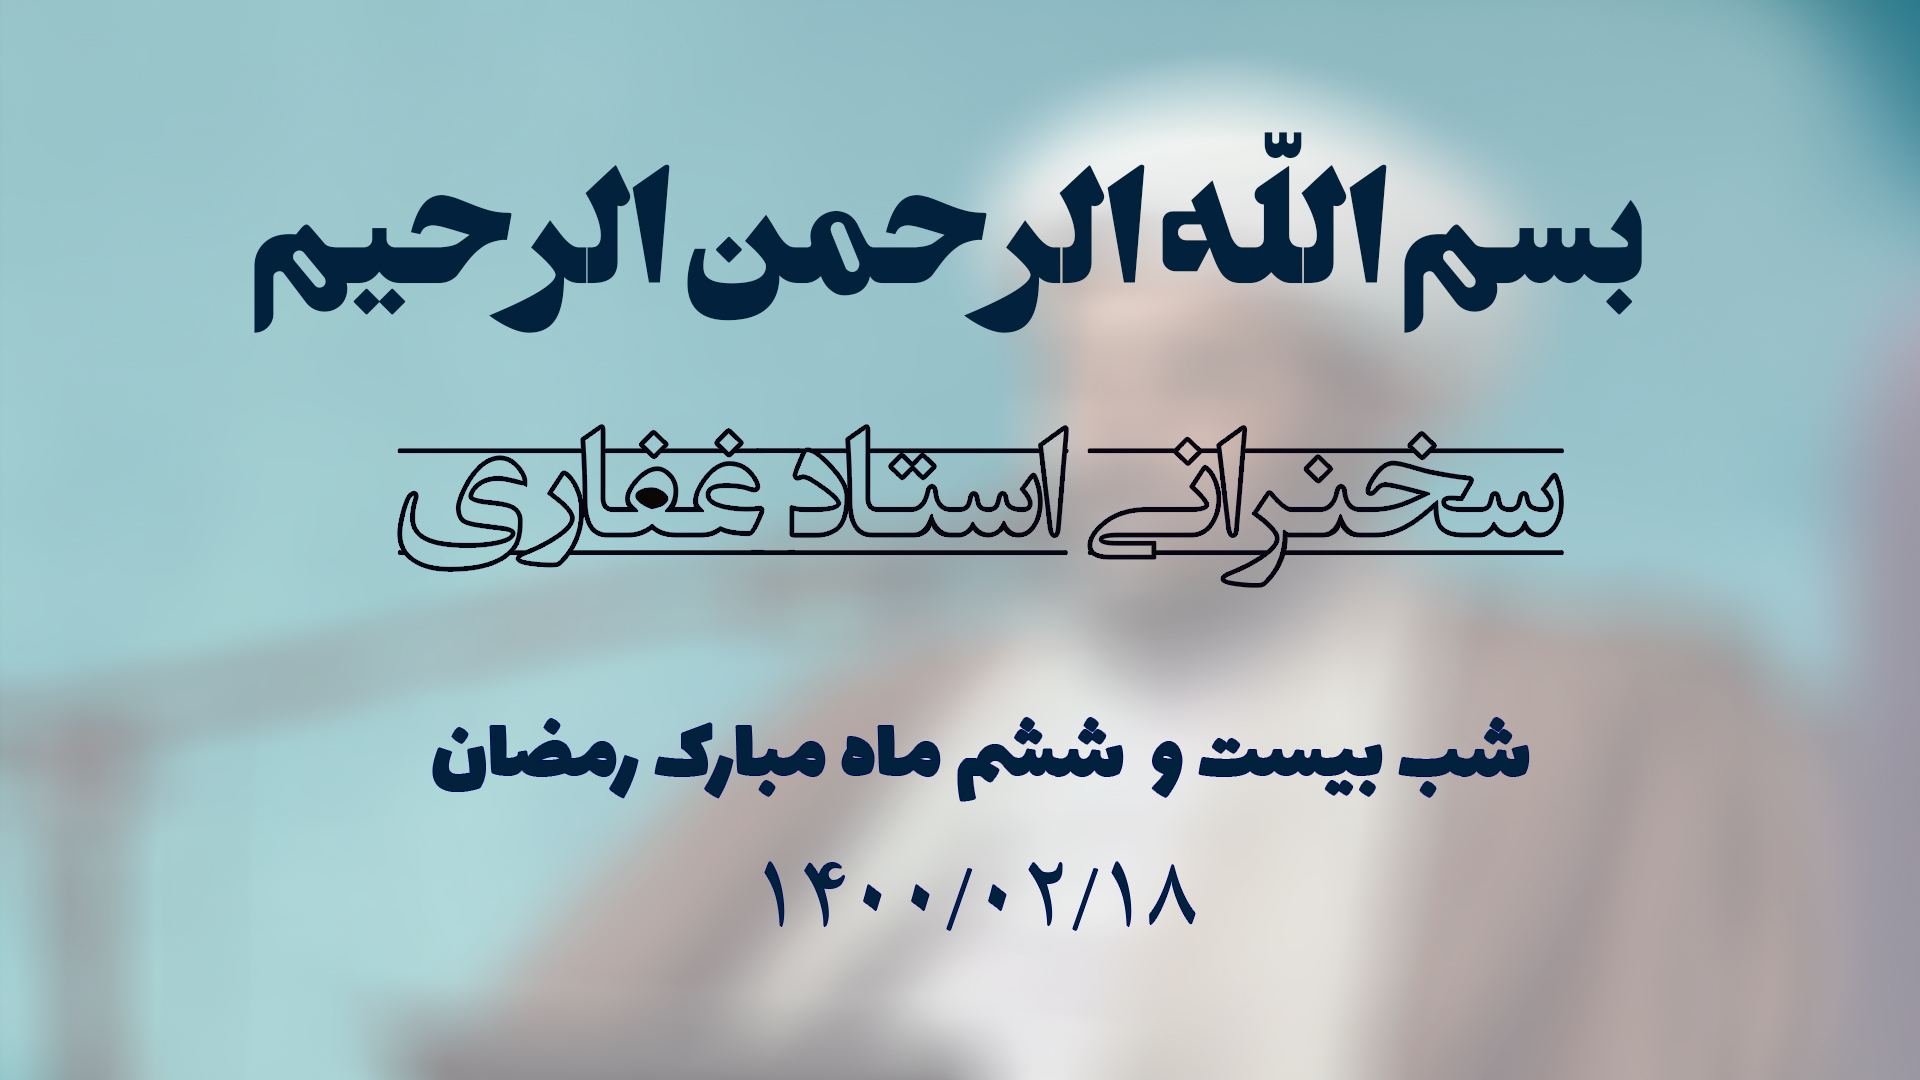 سخنرانی استاد غفاری ، شب بیست و ششم ماه مبارک رمضان ۱۴۰۰/۰۲/۱8